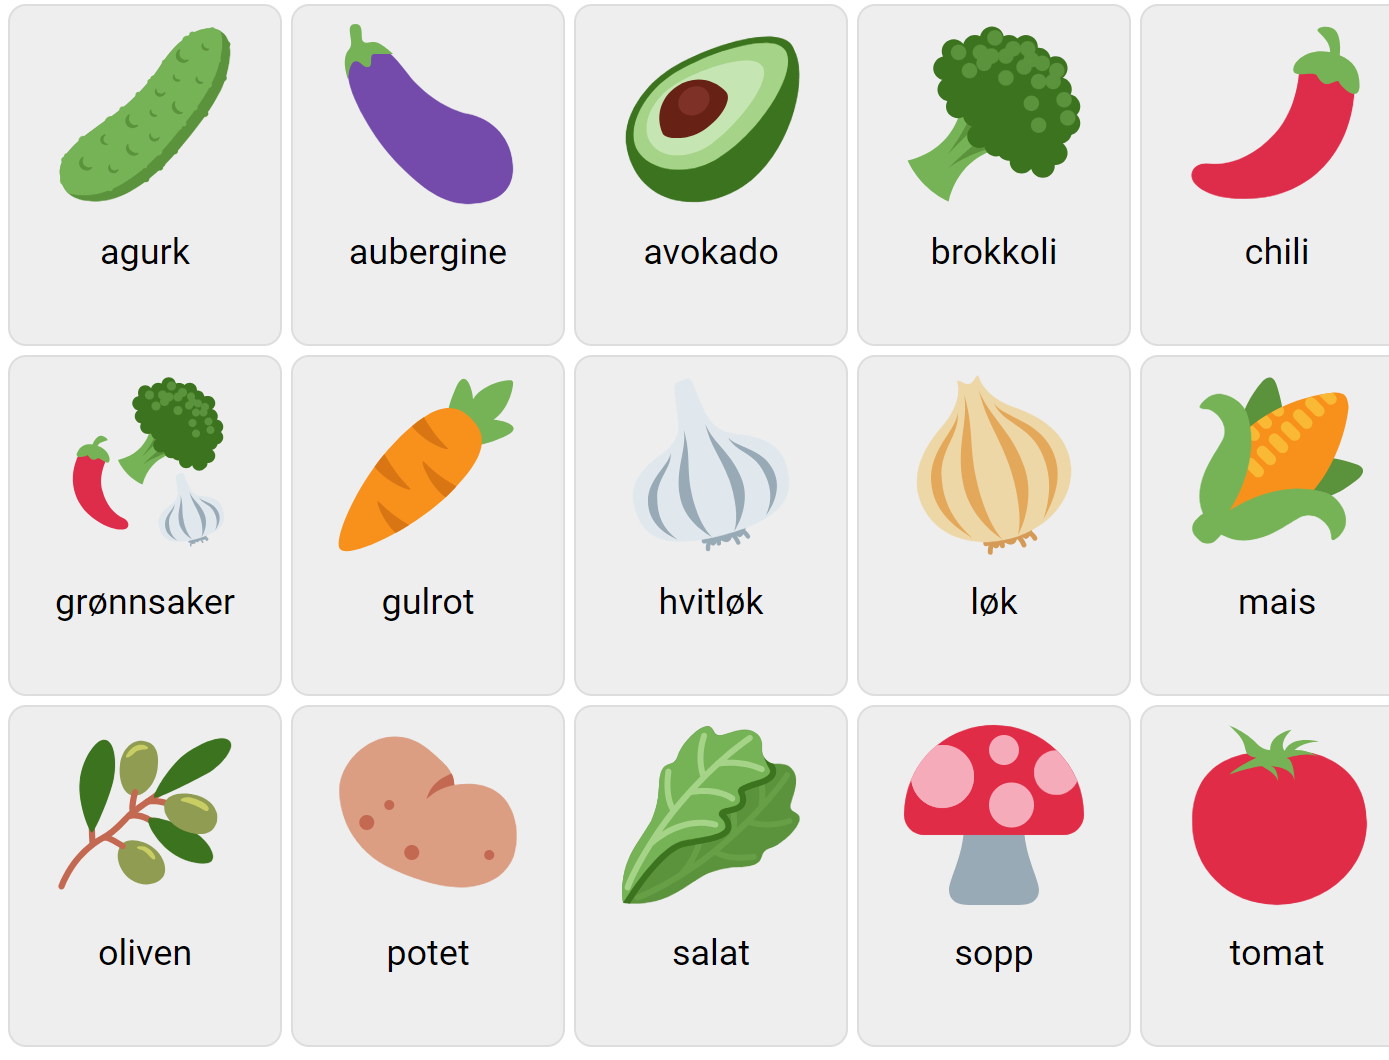 Grönsaker på norska